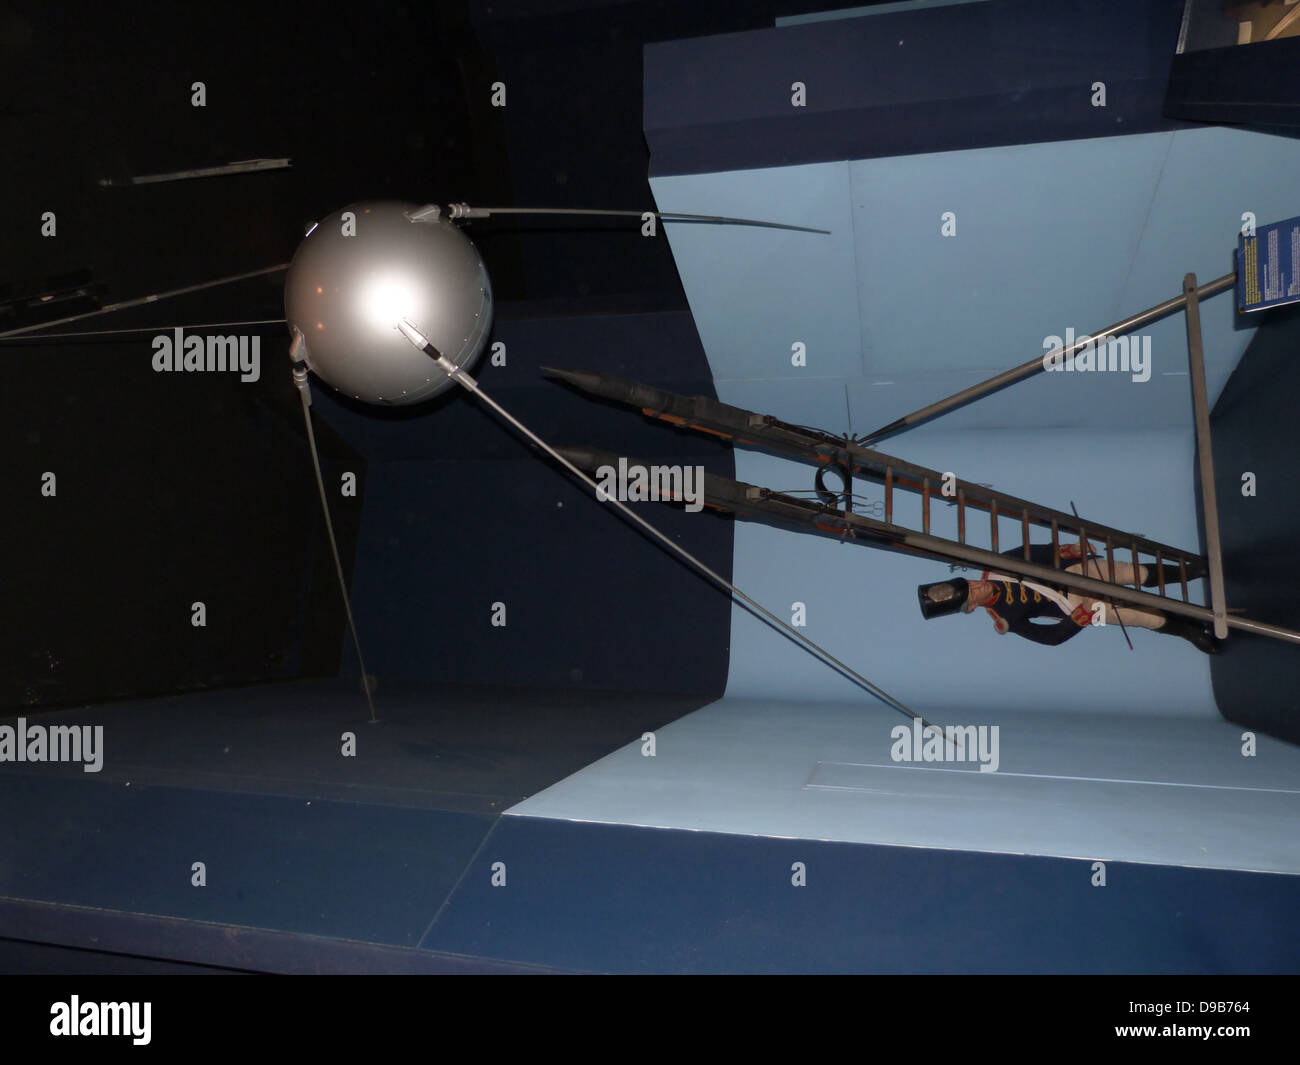 Sputnik 1, Replica. Sputnik 1 wurde in der Umlaufbahn um die Erde am 4. Oktober 1957 ins Leben gerufen. Es war das erste künstliche Satelliten, die von der Sowjetunion getroffen. Sputnik blieb im Orbit um die Erde über einen Zeitraum von 3 Monaten nach seiner Einführung, dann Im verbrannt Stockfoto